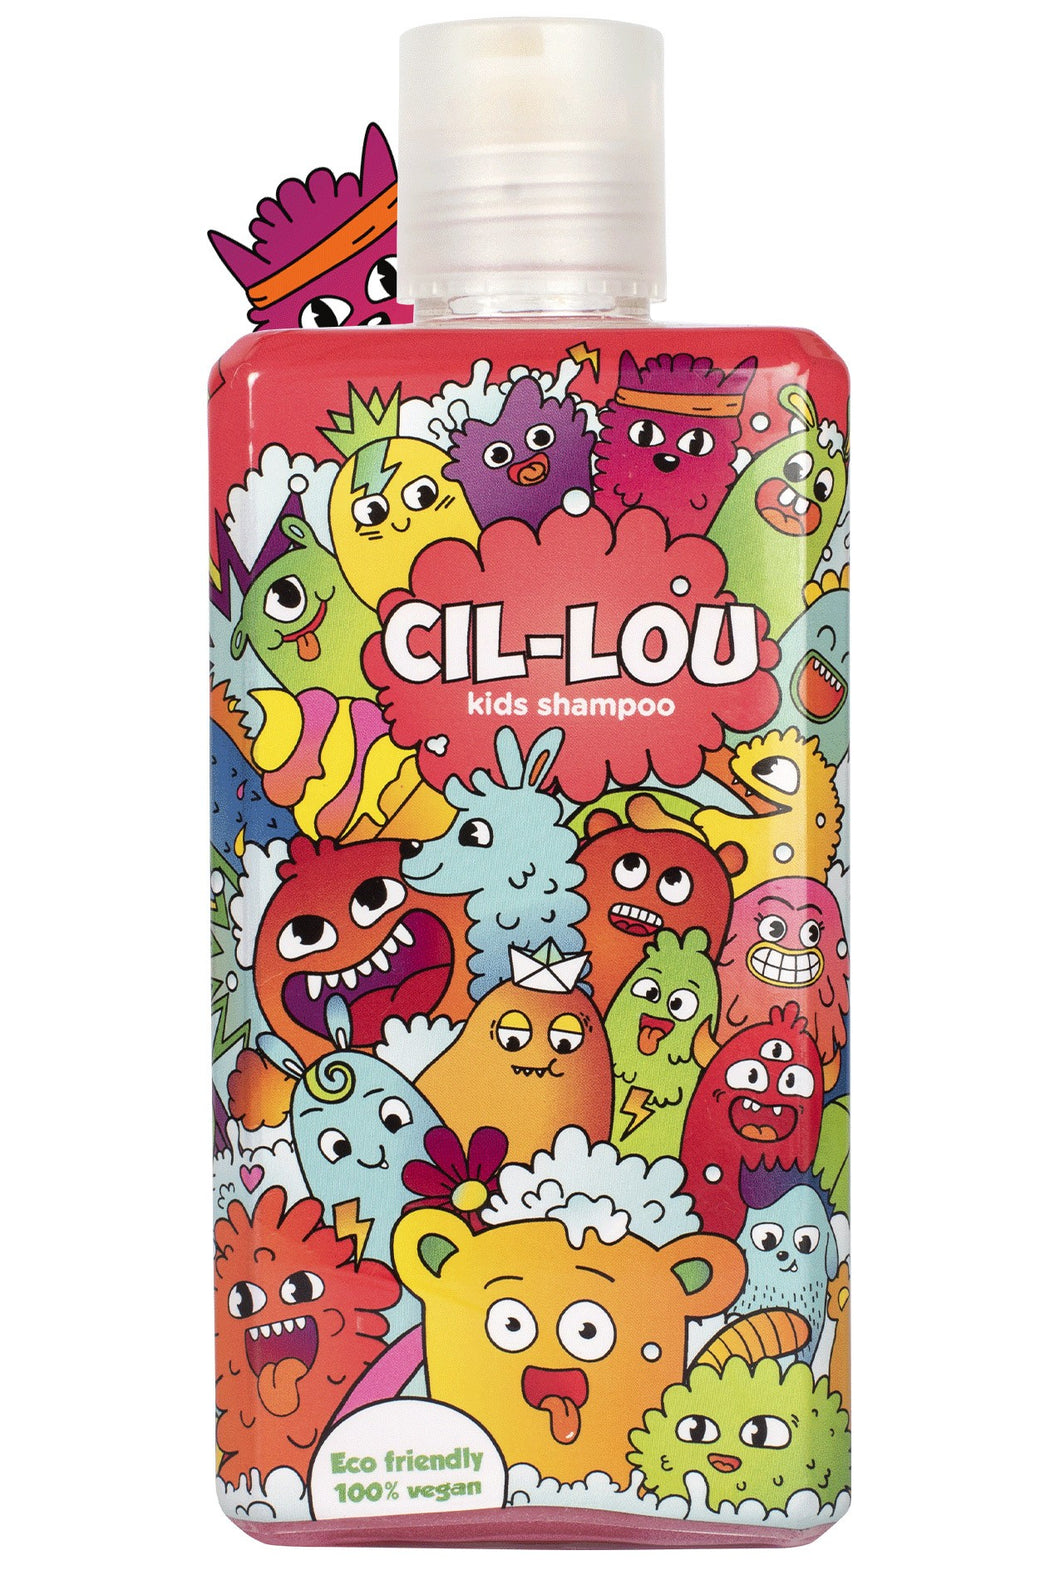 Cil-Lou - Kids shampoo - Fizo -30%